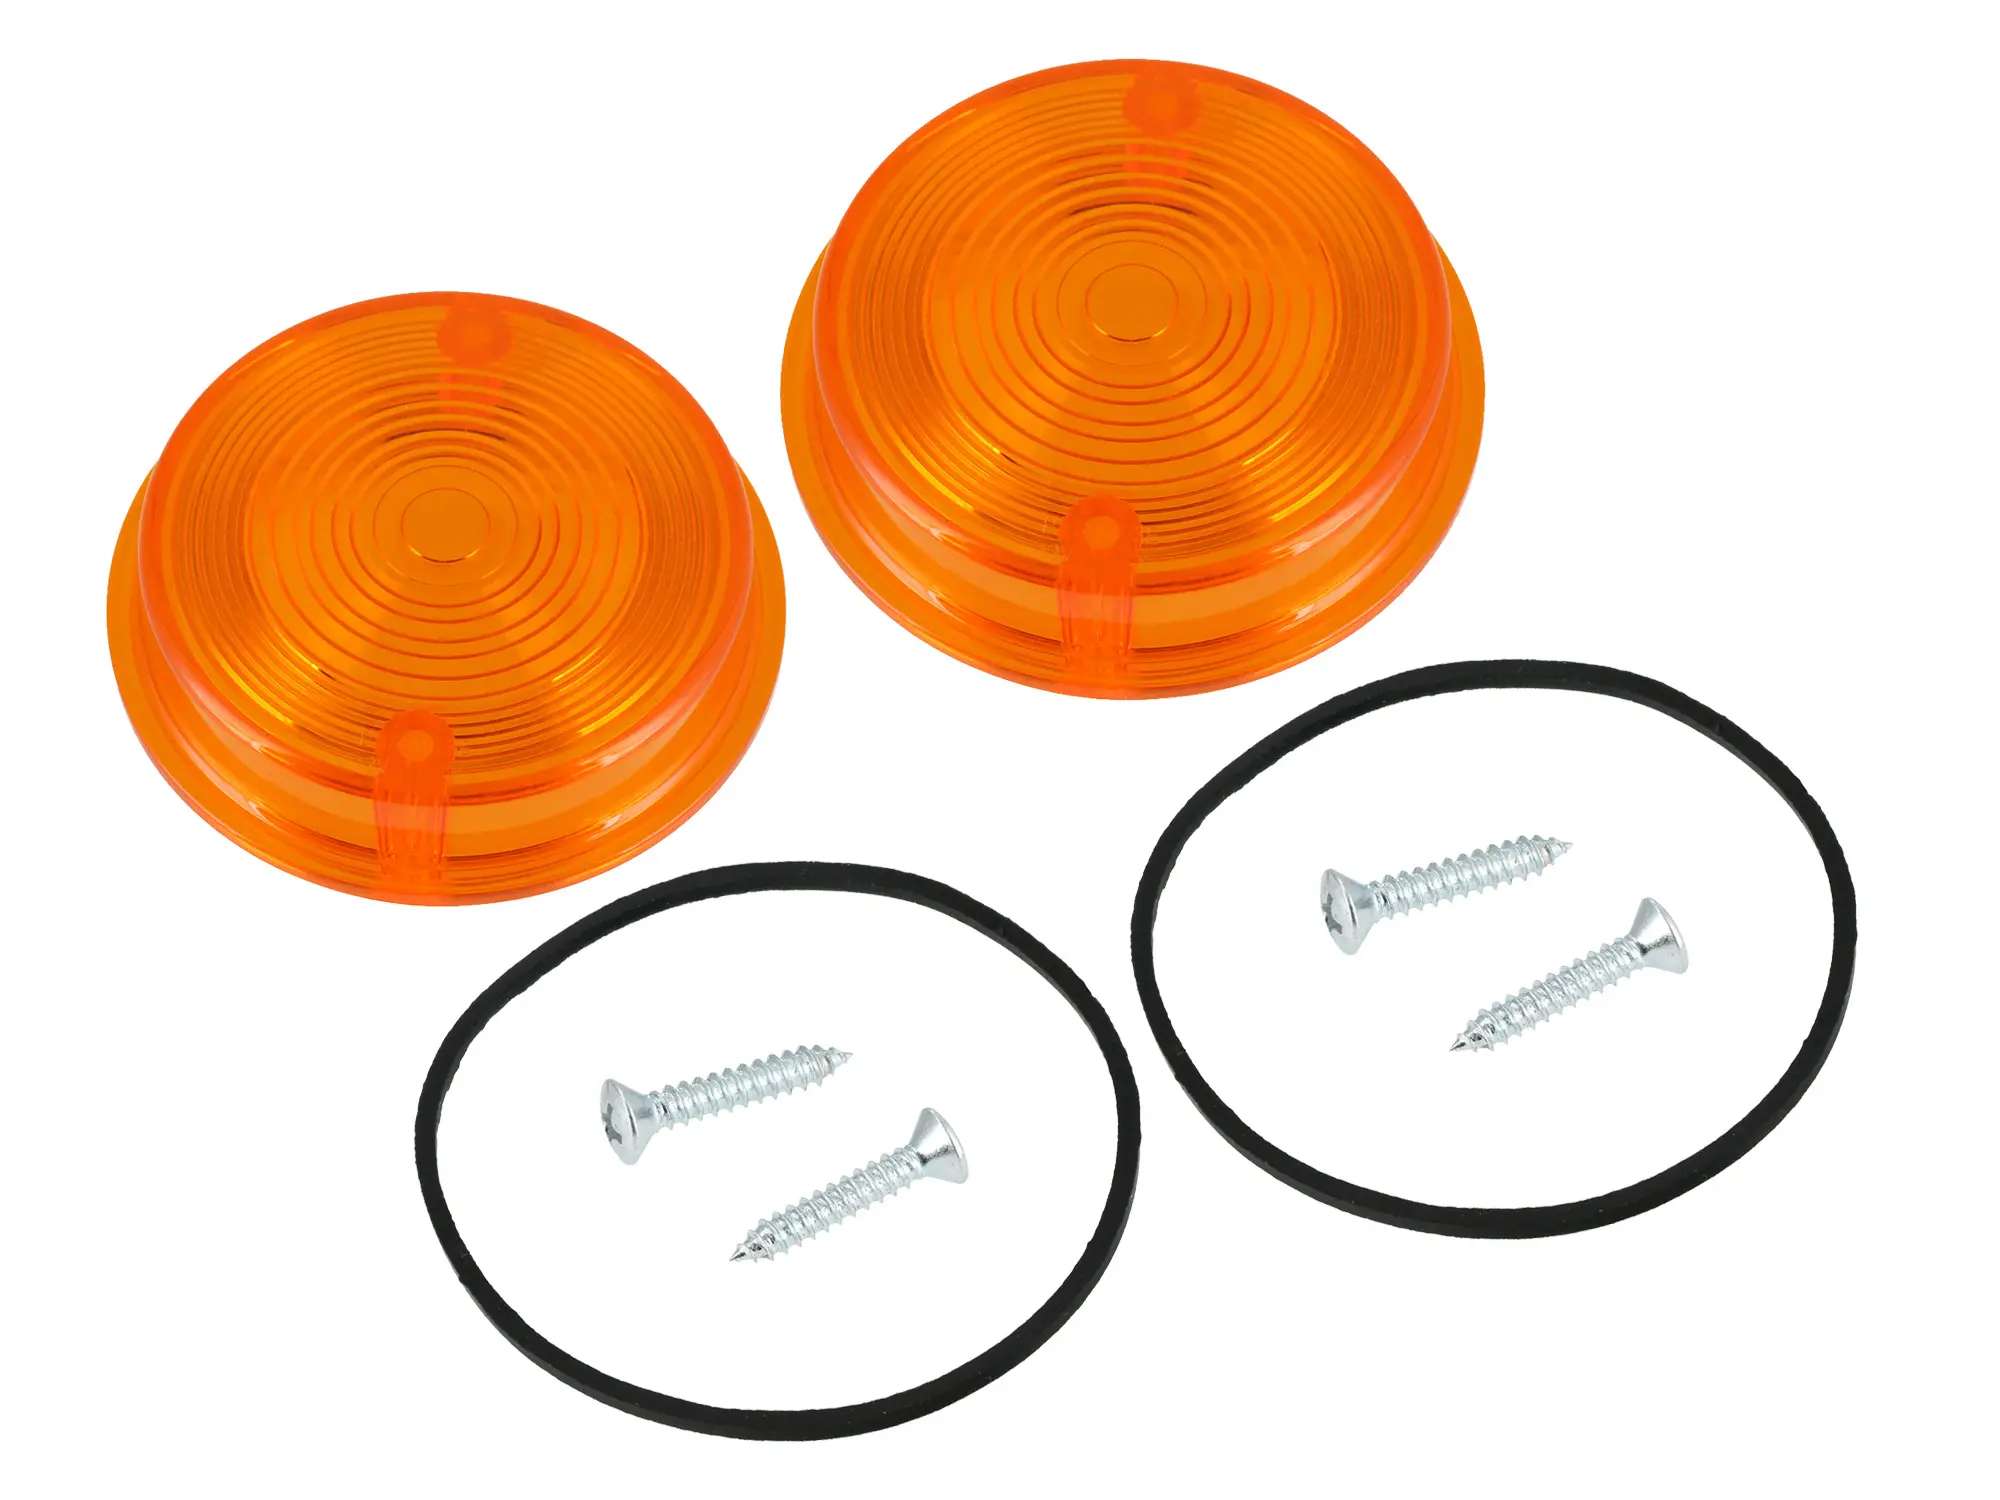 Set: 2x Blinkerkappe hinten, rund, orange inkl. Gummidichtring + Schrauben - für Simson S50, S51, S70, SR50, SR80 - MZ ETZ, TS, Item no: GP10068602 - Image 1